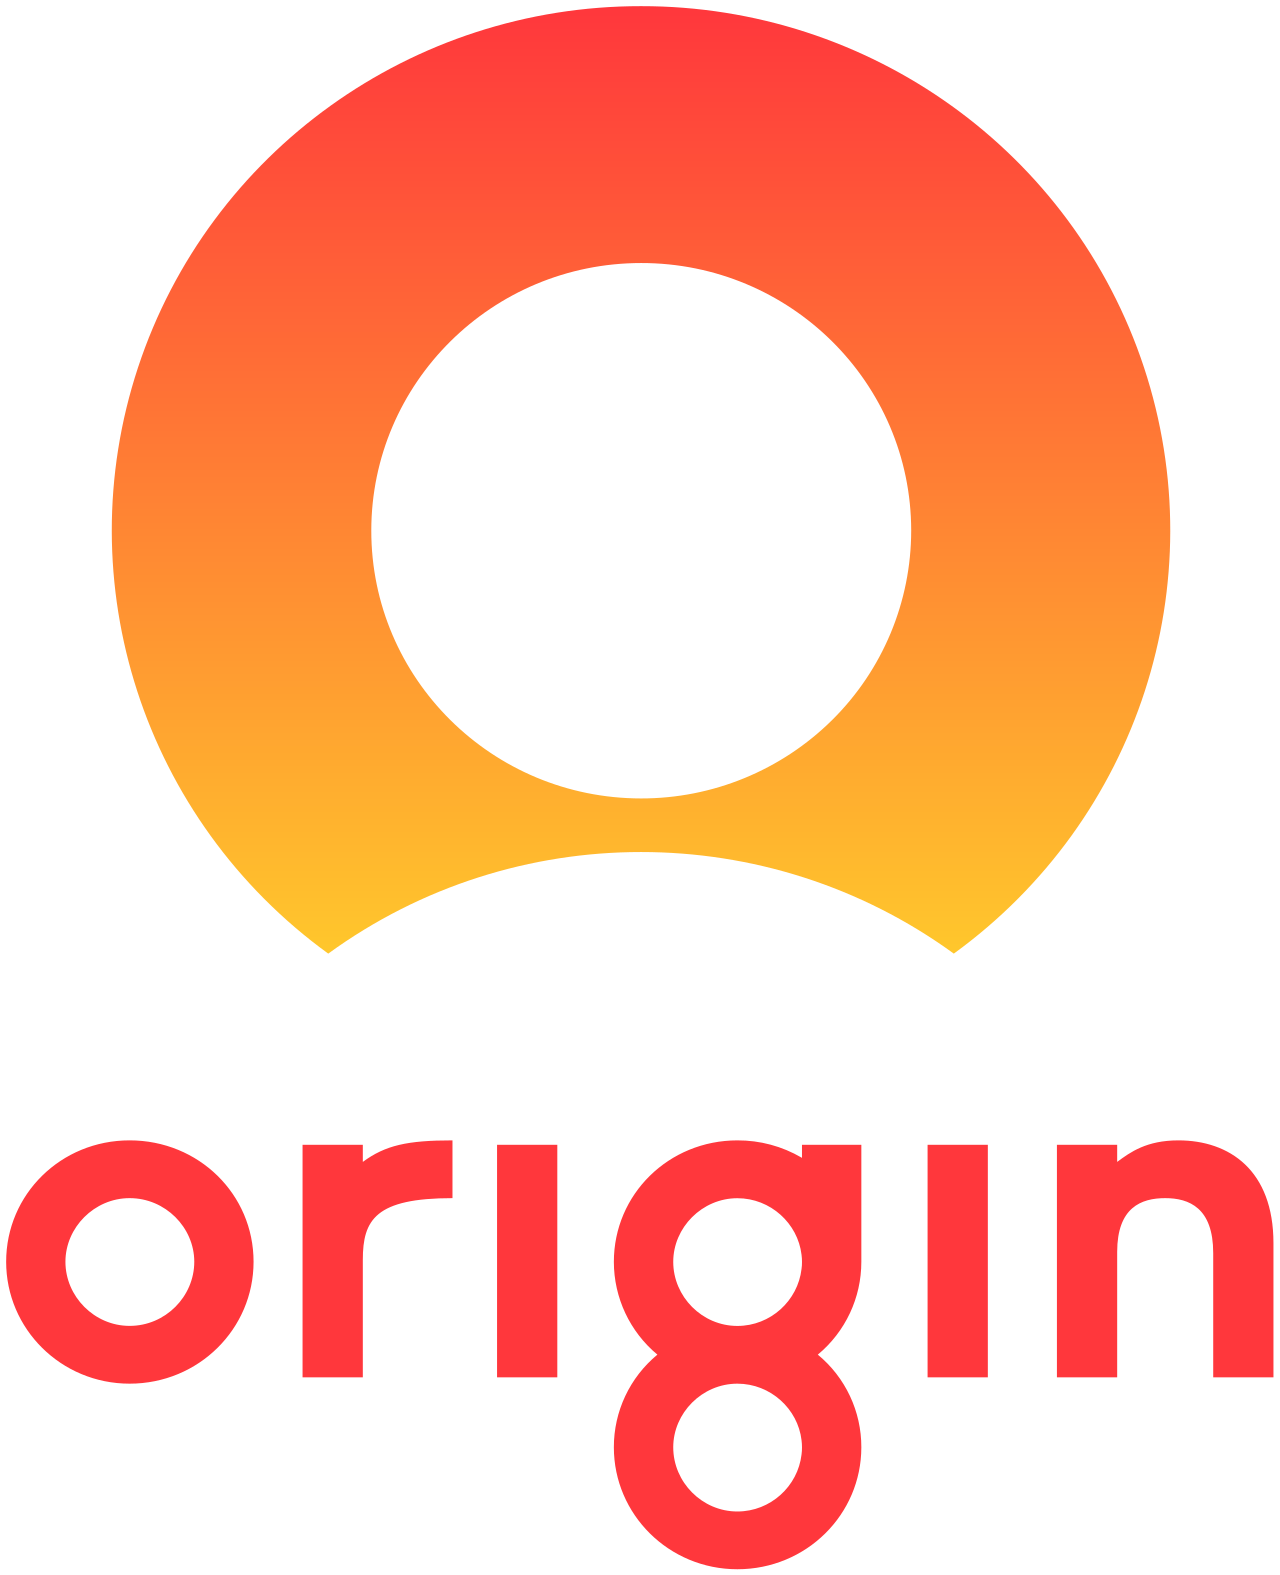 origin logo